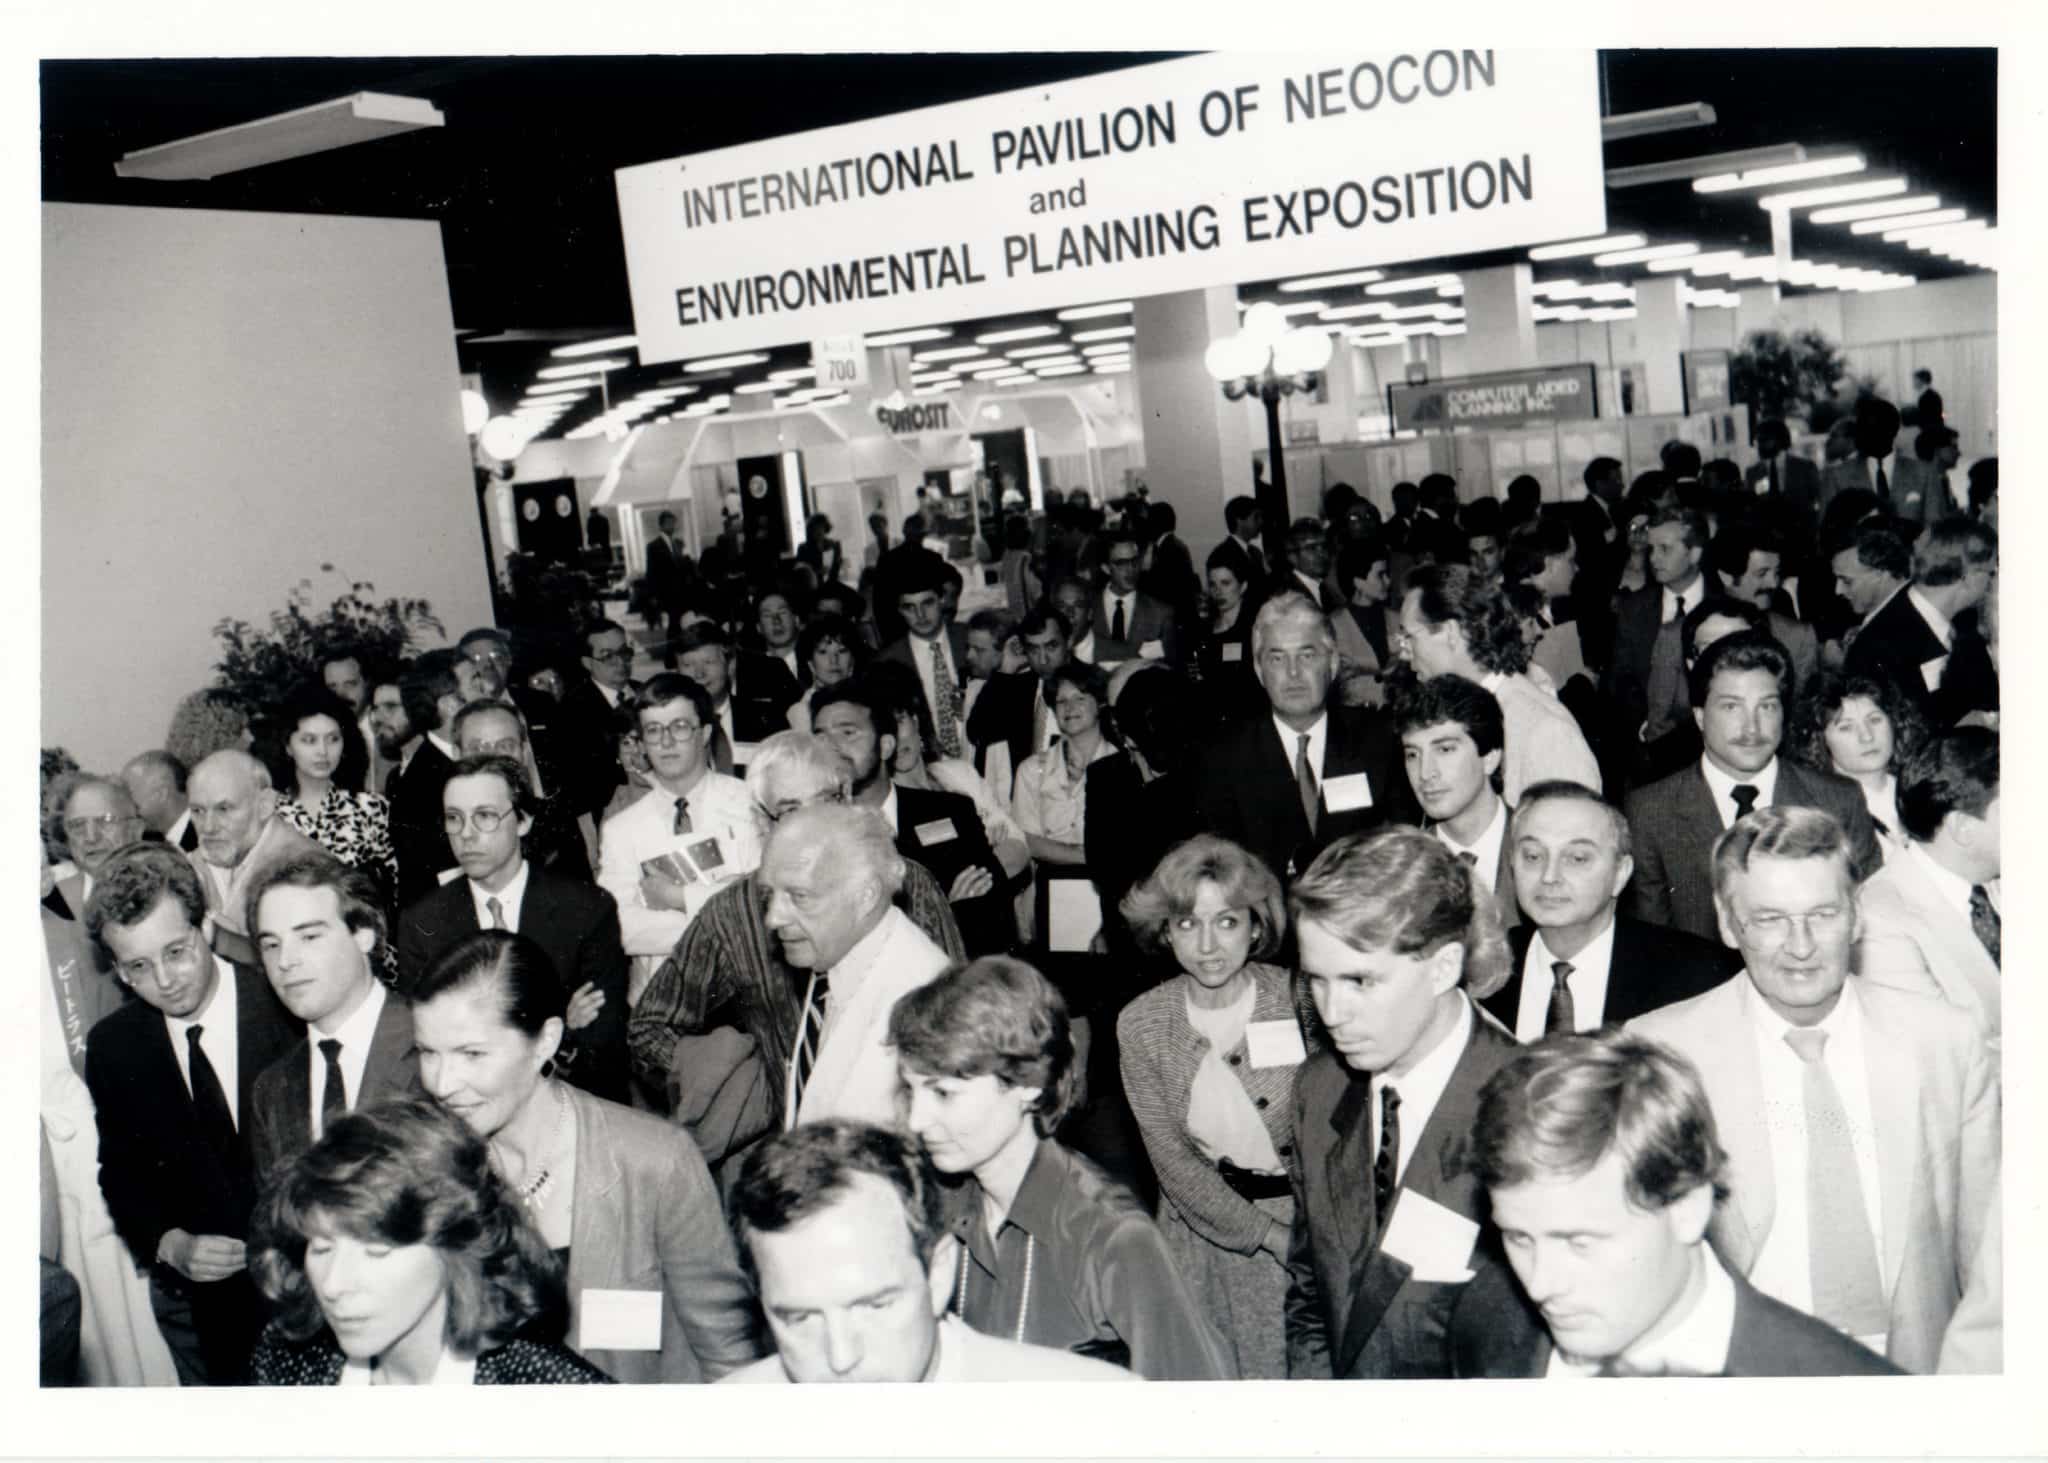 The 1988 NeoCon convention